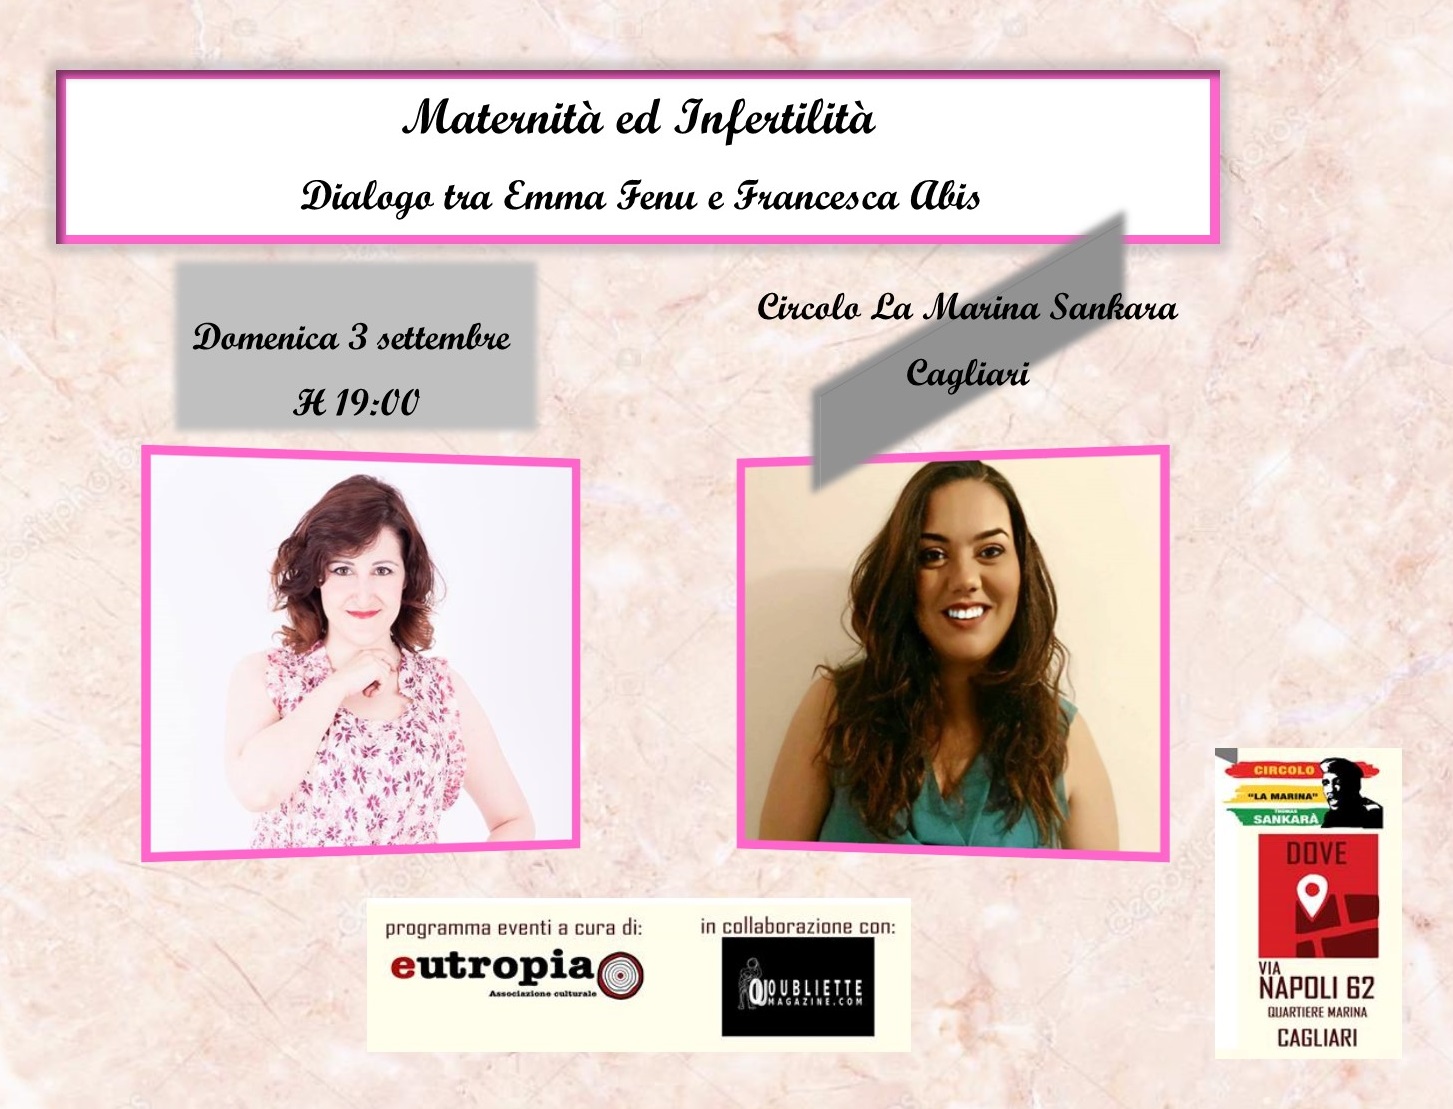 “Maternità ed Infertilità”: dialogo tra Emma Fenu e Francesca Abis, 3 settembre 2017, Cagliari